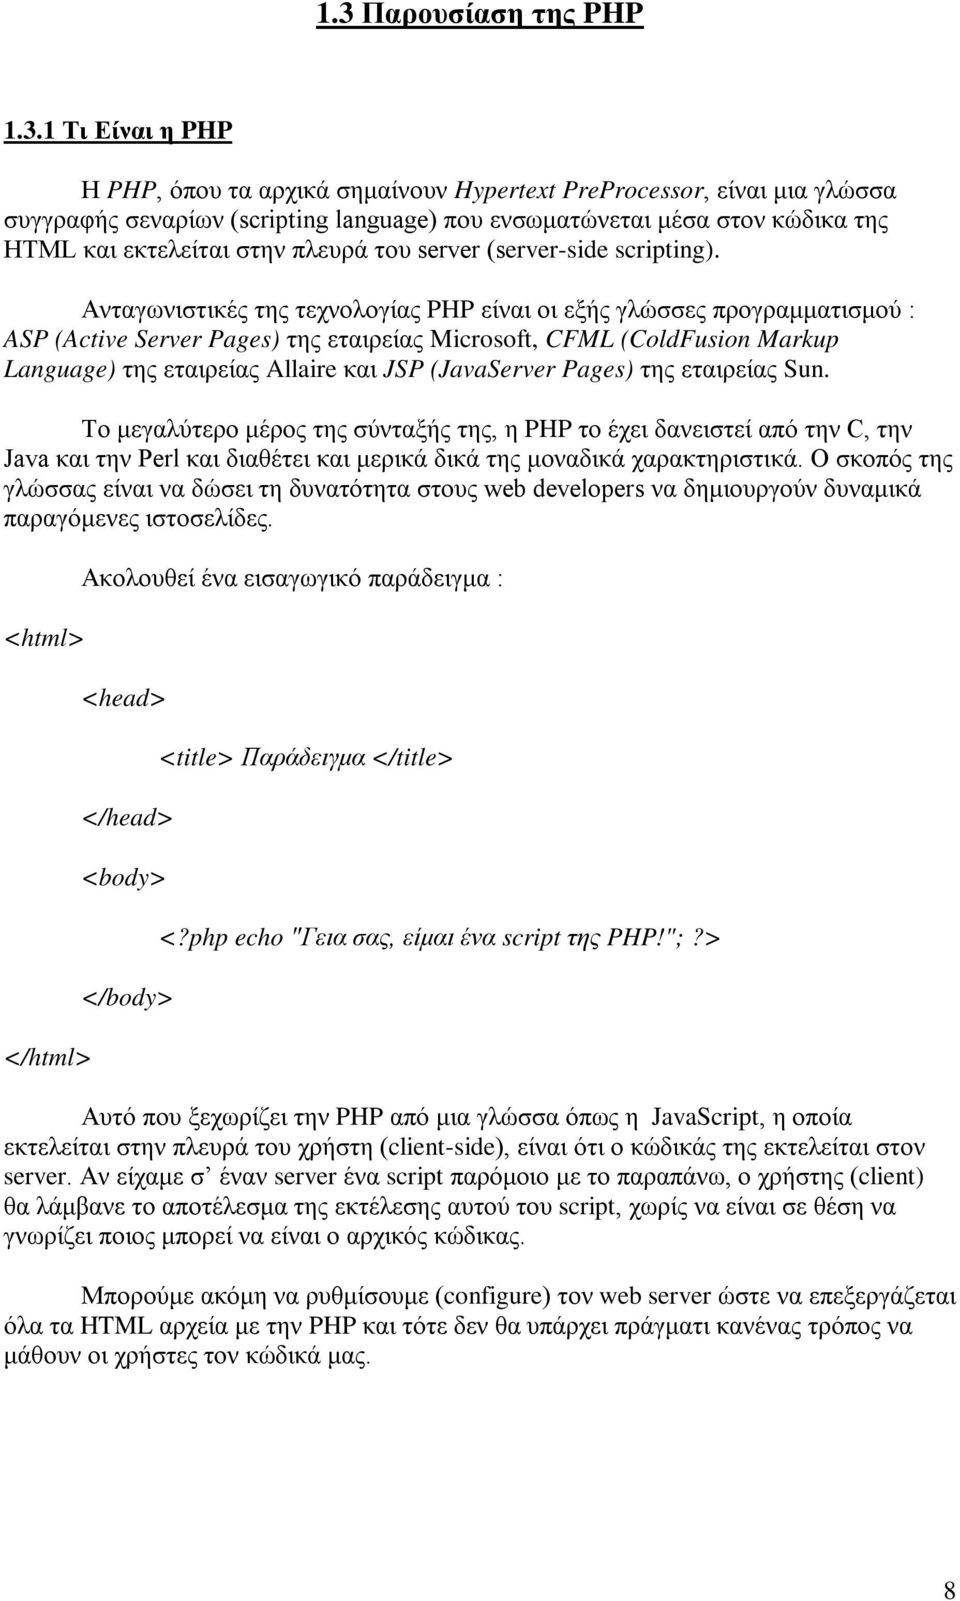 Ανταγωνιστικές της τεχνολογίας PHP είναι οι εξής γλώσσες προγραμματισμού : ASP (Active Server Pages) της εταιρείας Microsoft, CFML (ColdFusion Markup Language) της εταιρείας Allaire και JSP